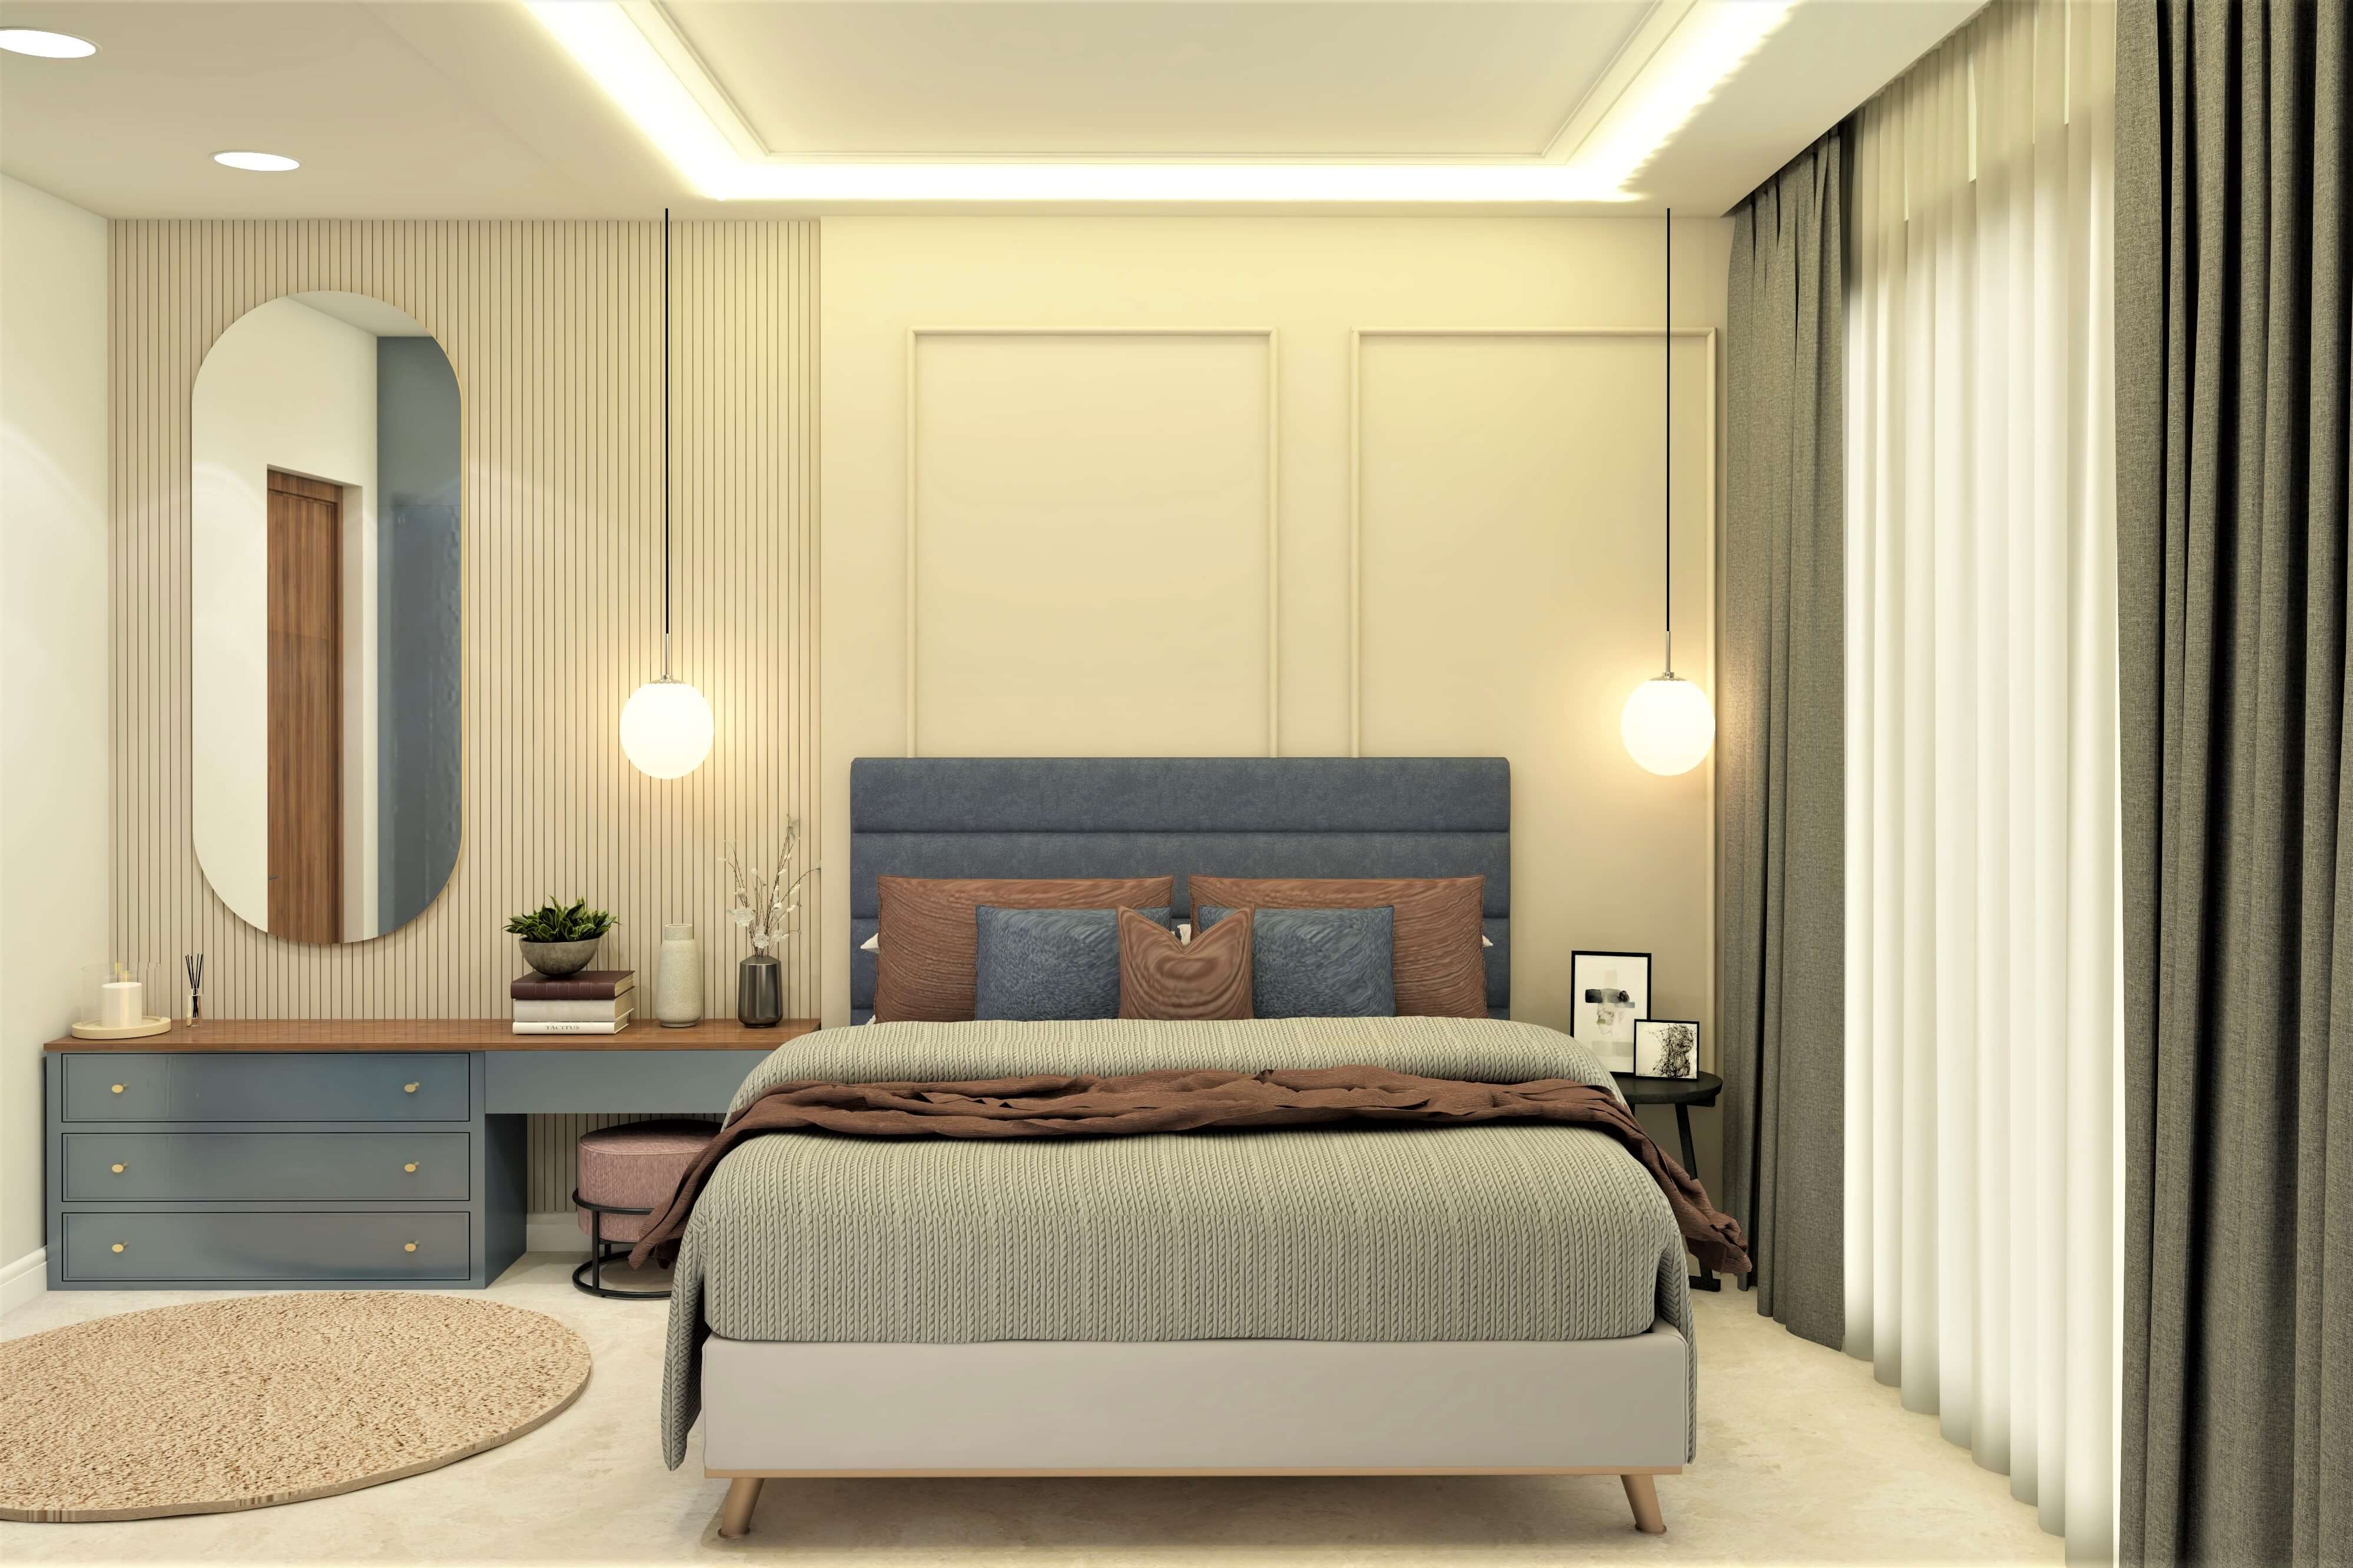 Classic Beige Bedroom Designs - Beautiful Homes